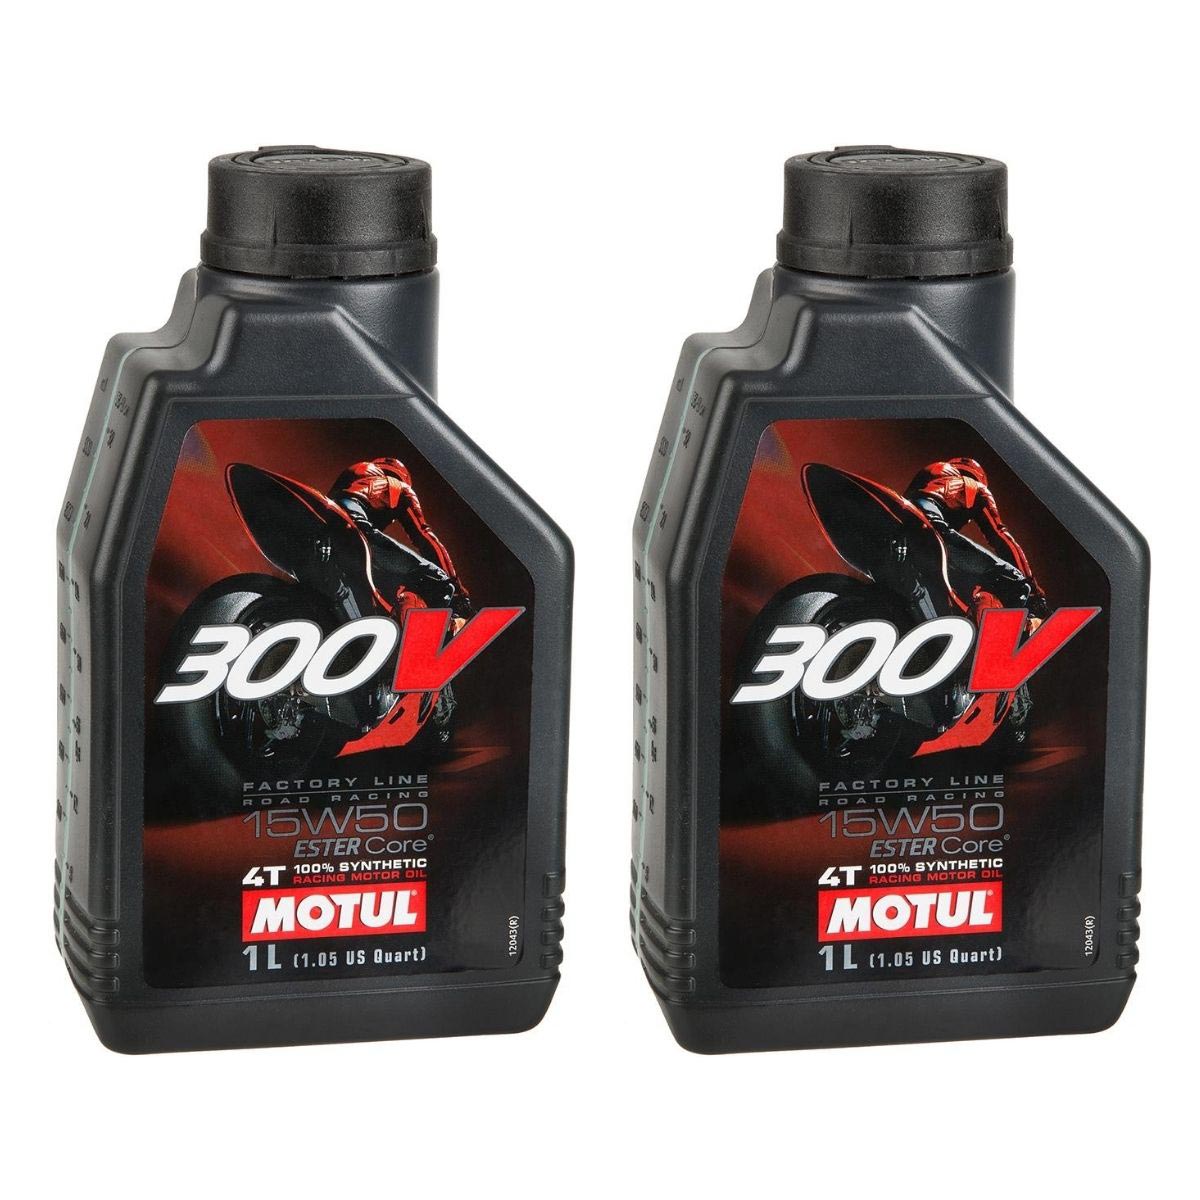 Motul Motorenöl Factory Line 2er-Set, Je 1 L, Road Racing 300V, 15W50